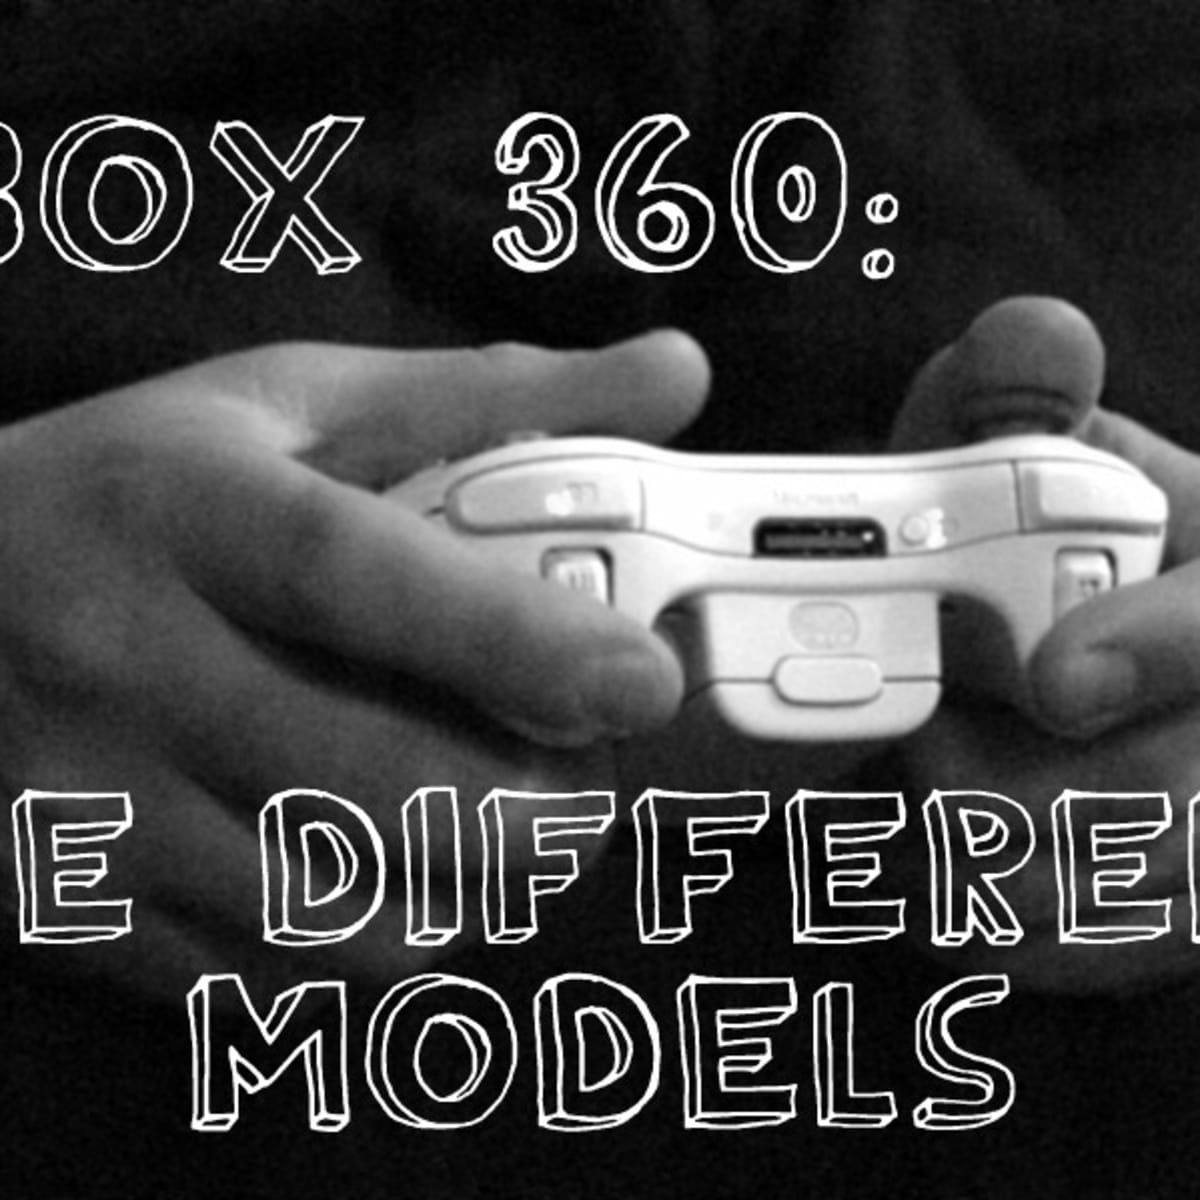 xbox 360 logo black and white